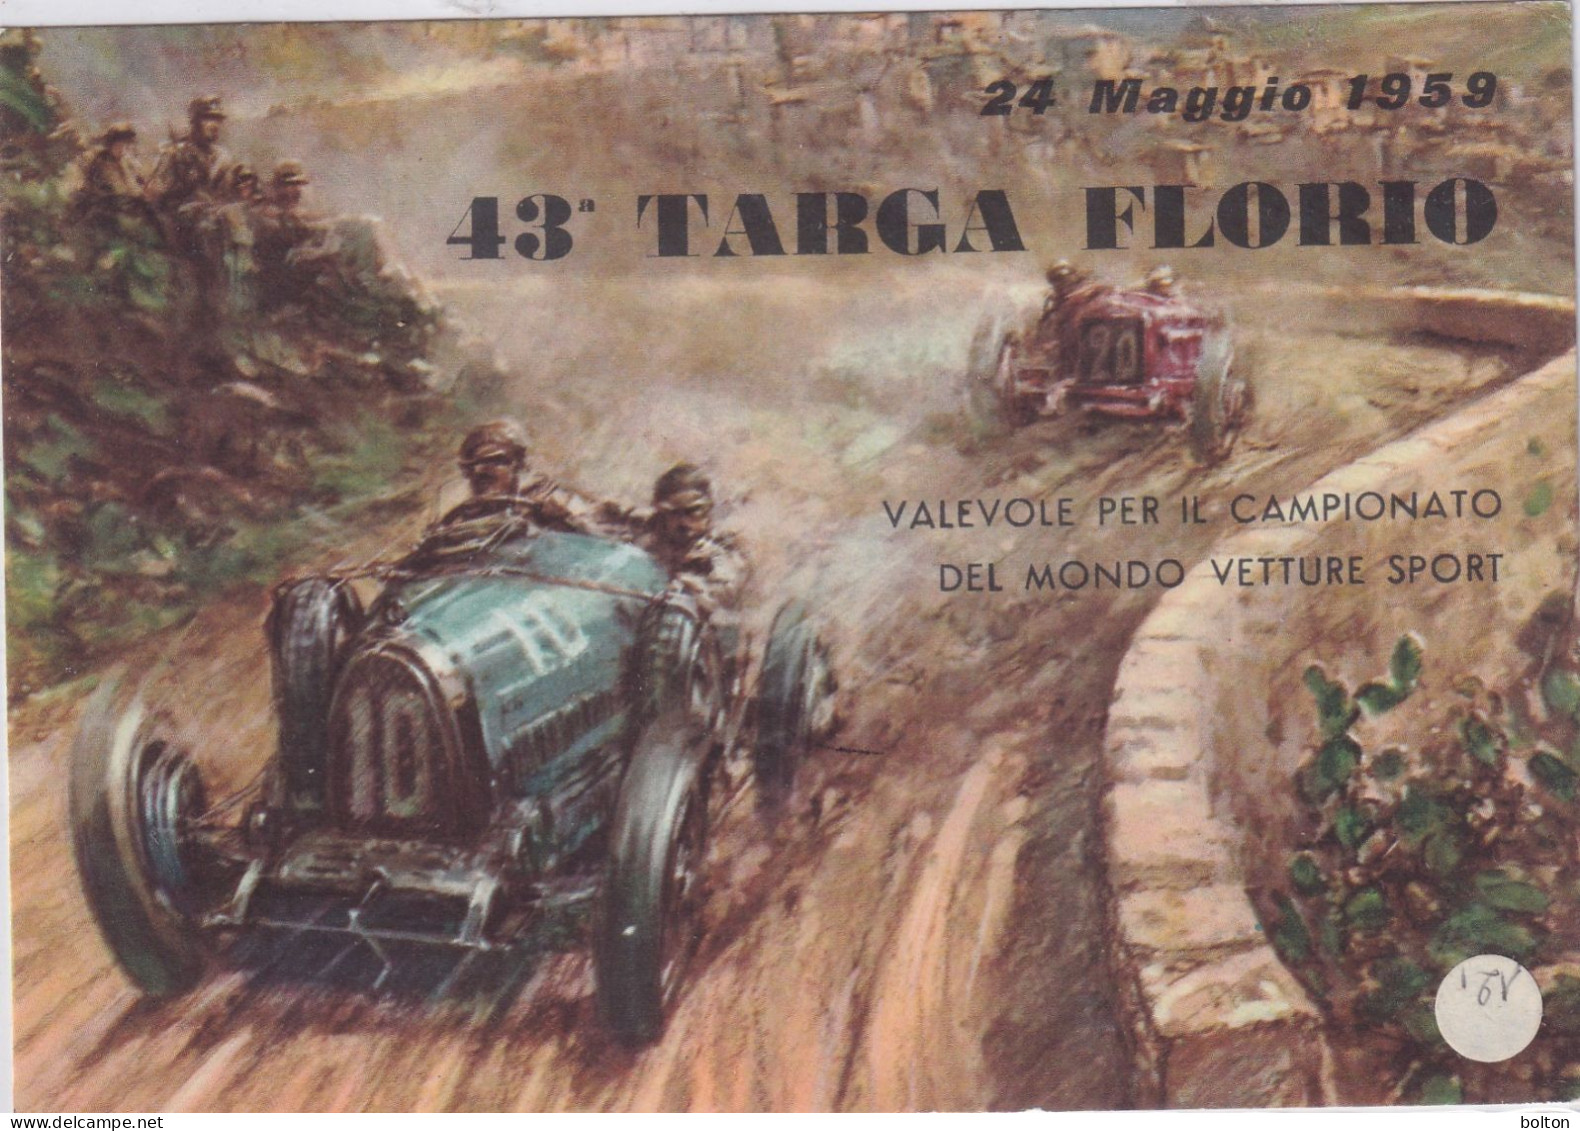 1959 CARTOLINA UFFICIALE E ANNULLO SPECIALE  PER LA 43à TARGA FLORIO - Automobile